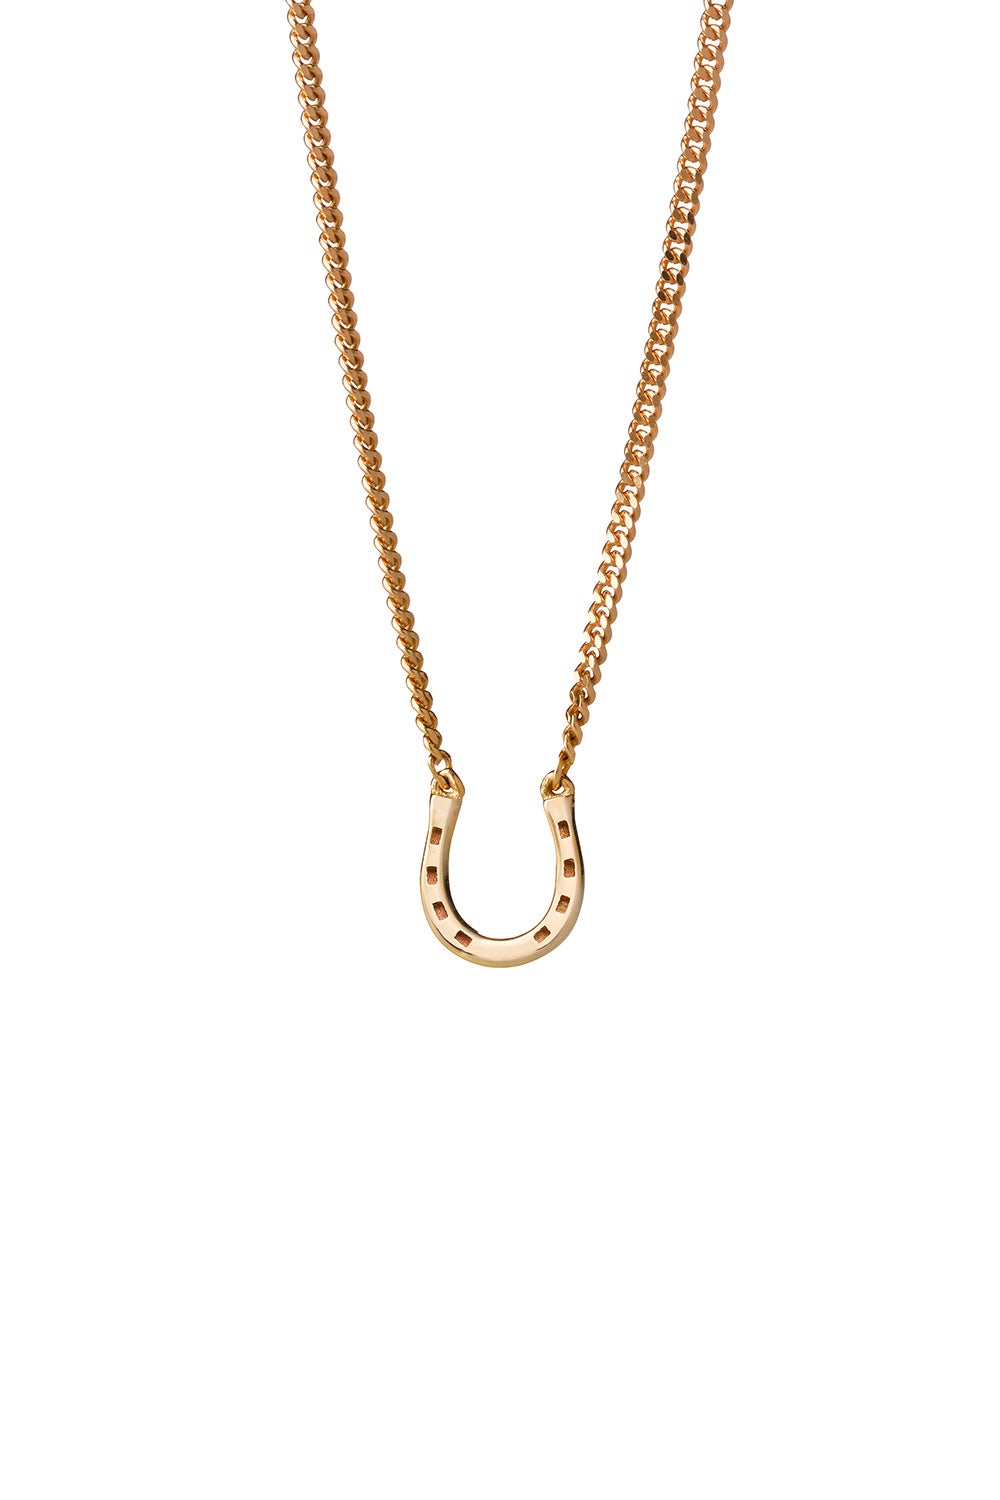 Mini Horseshoe Diamond Turquoise necklace, Yellow Gold, 16.5